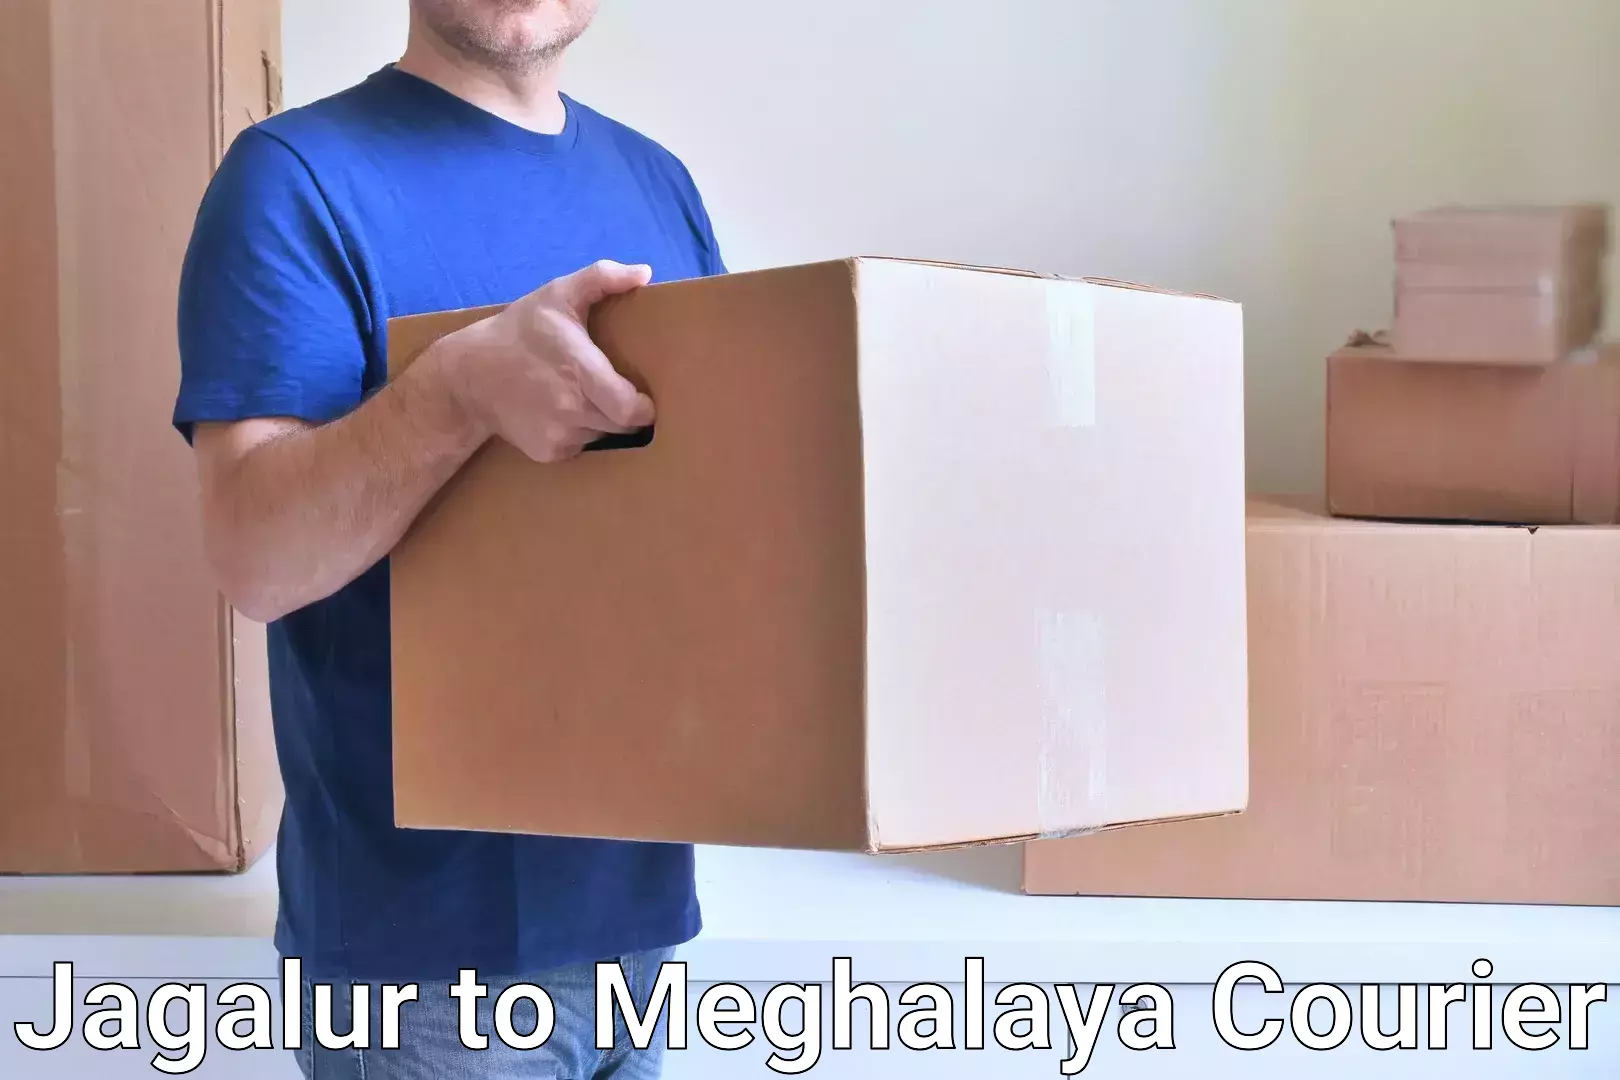 Lightweight parcel options Jagalur to Jowai